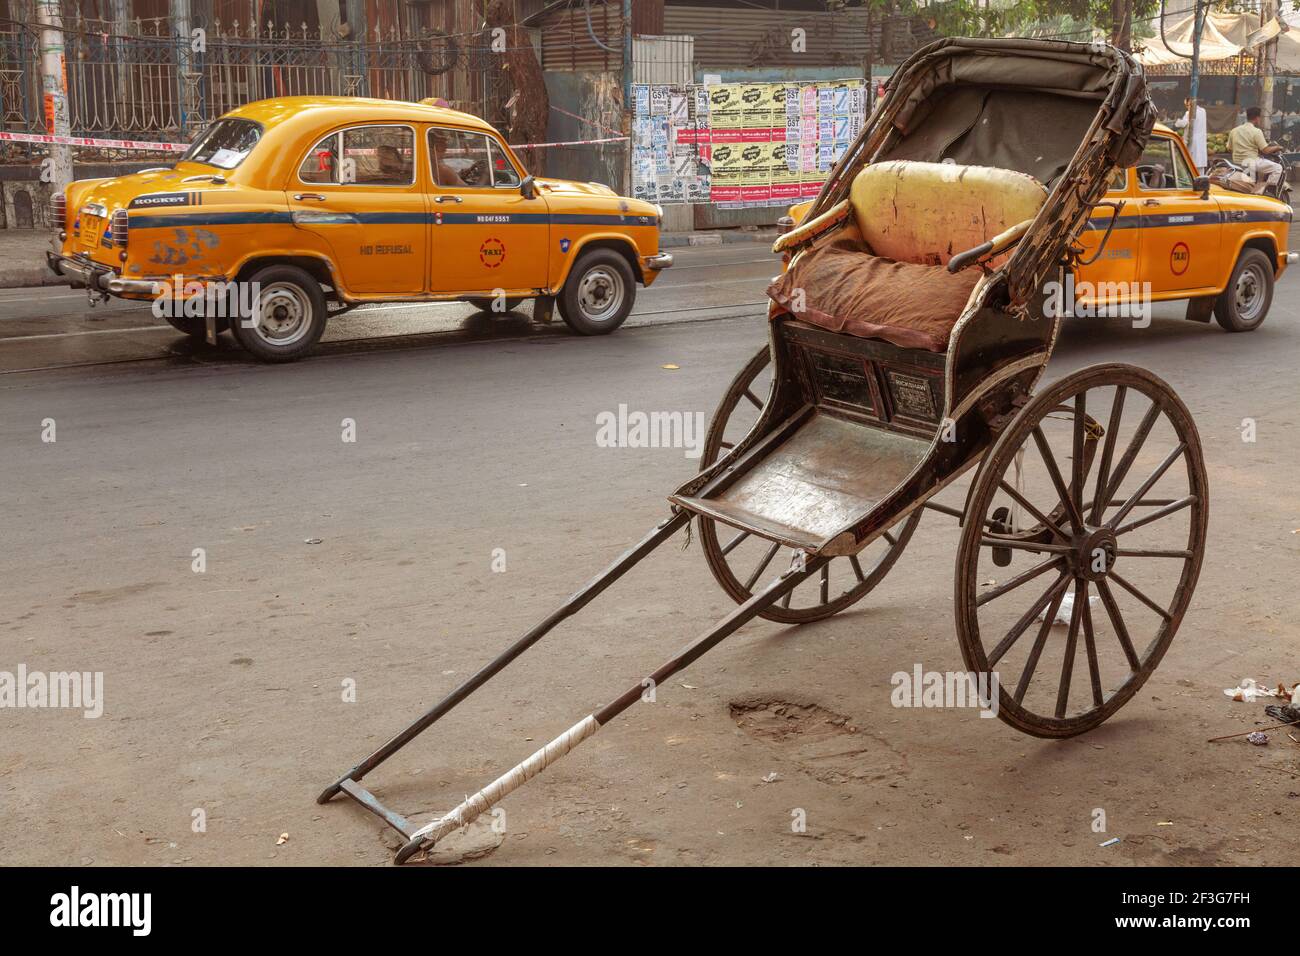 Hand drawn rickshaw with view of yellow taxi on city road at Kolkata India Stock Photo